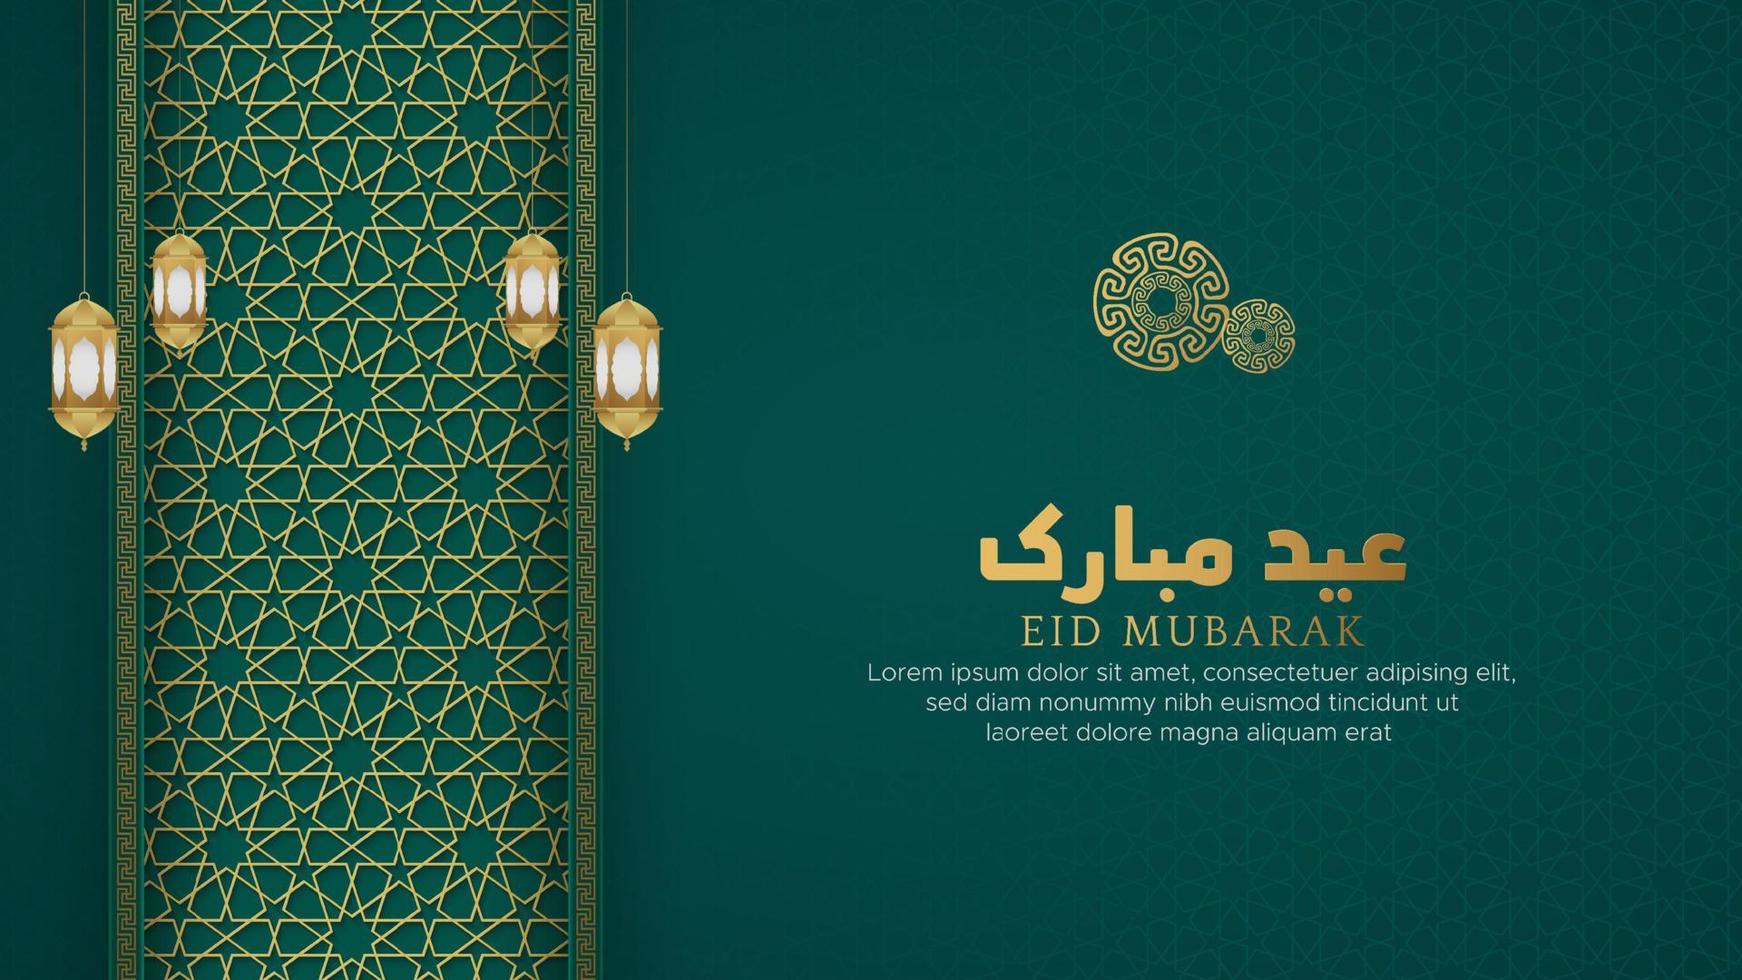 eid mubarak islamischer arabischer grüner luxushintergrund mit geometrischem muster und schöner verzierung vektor